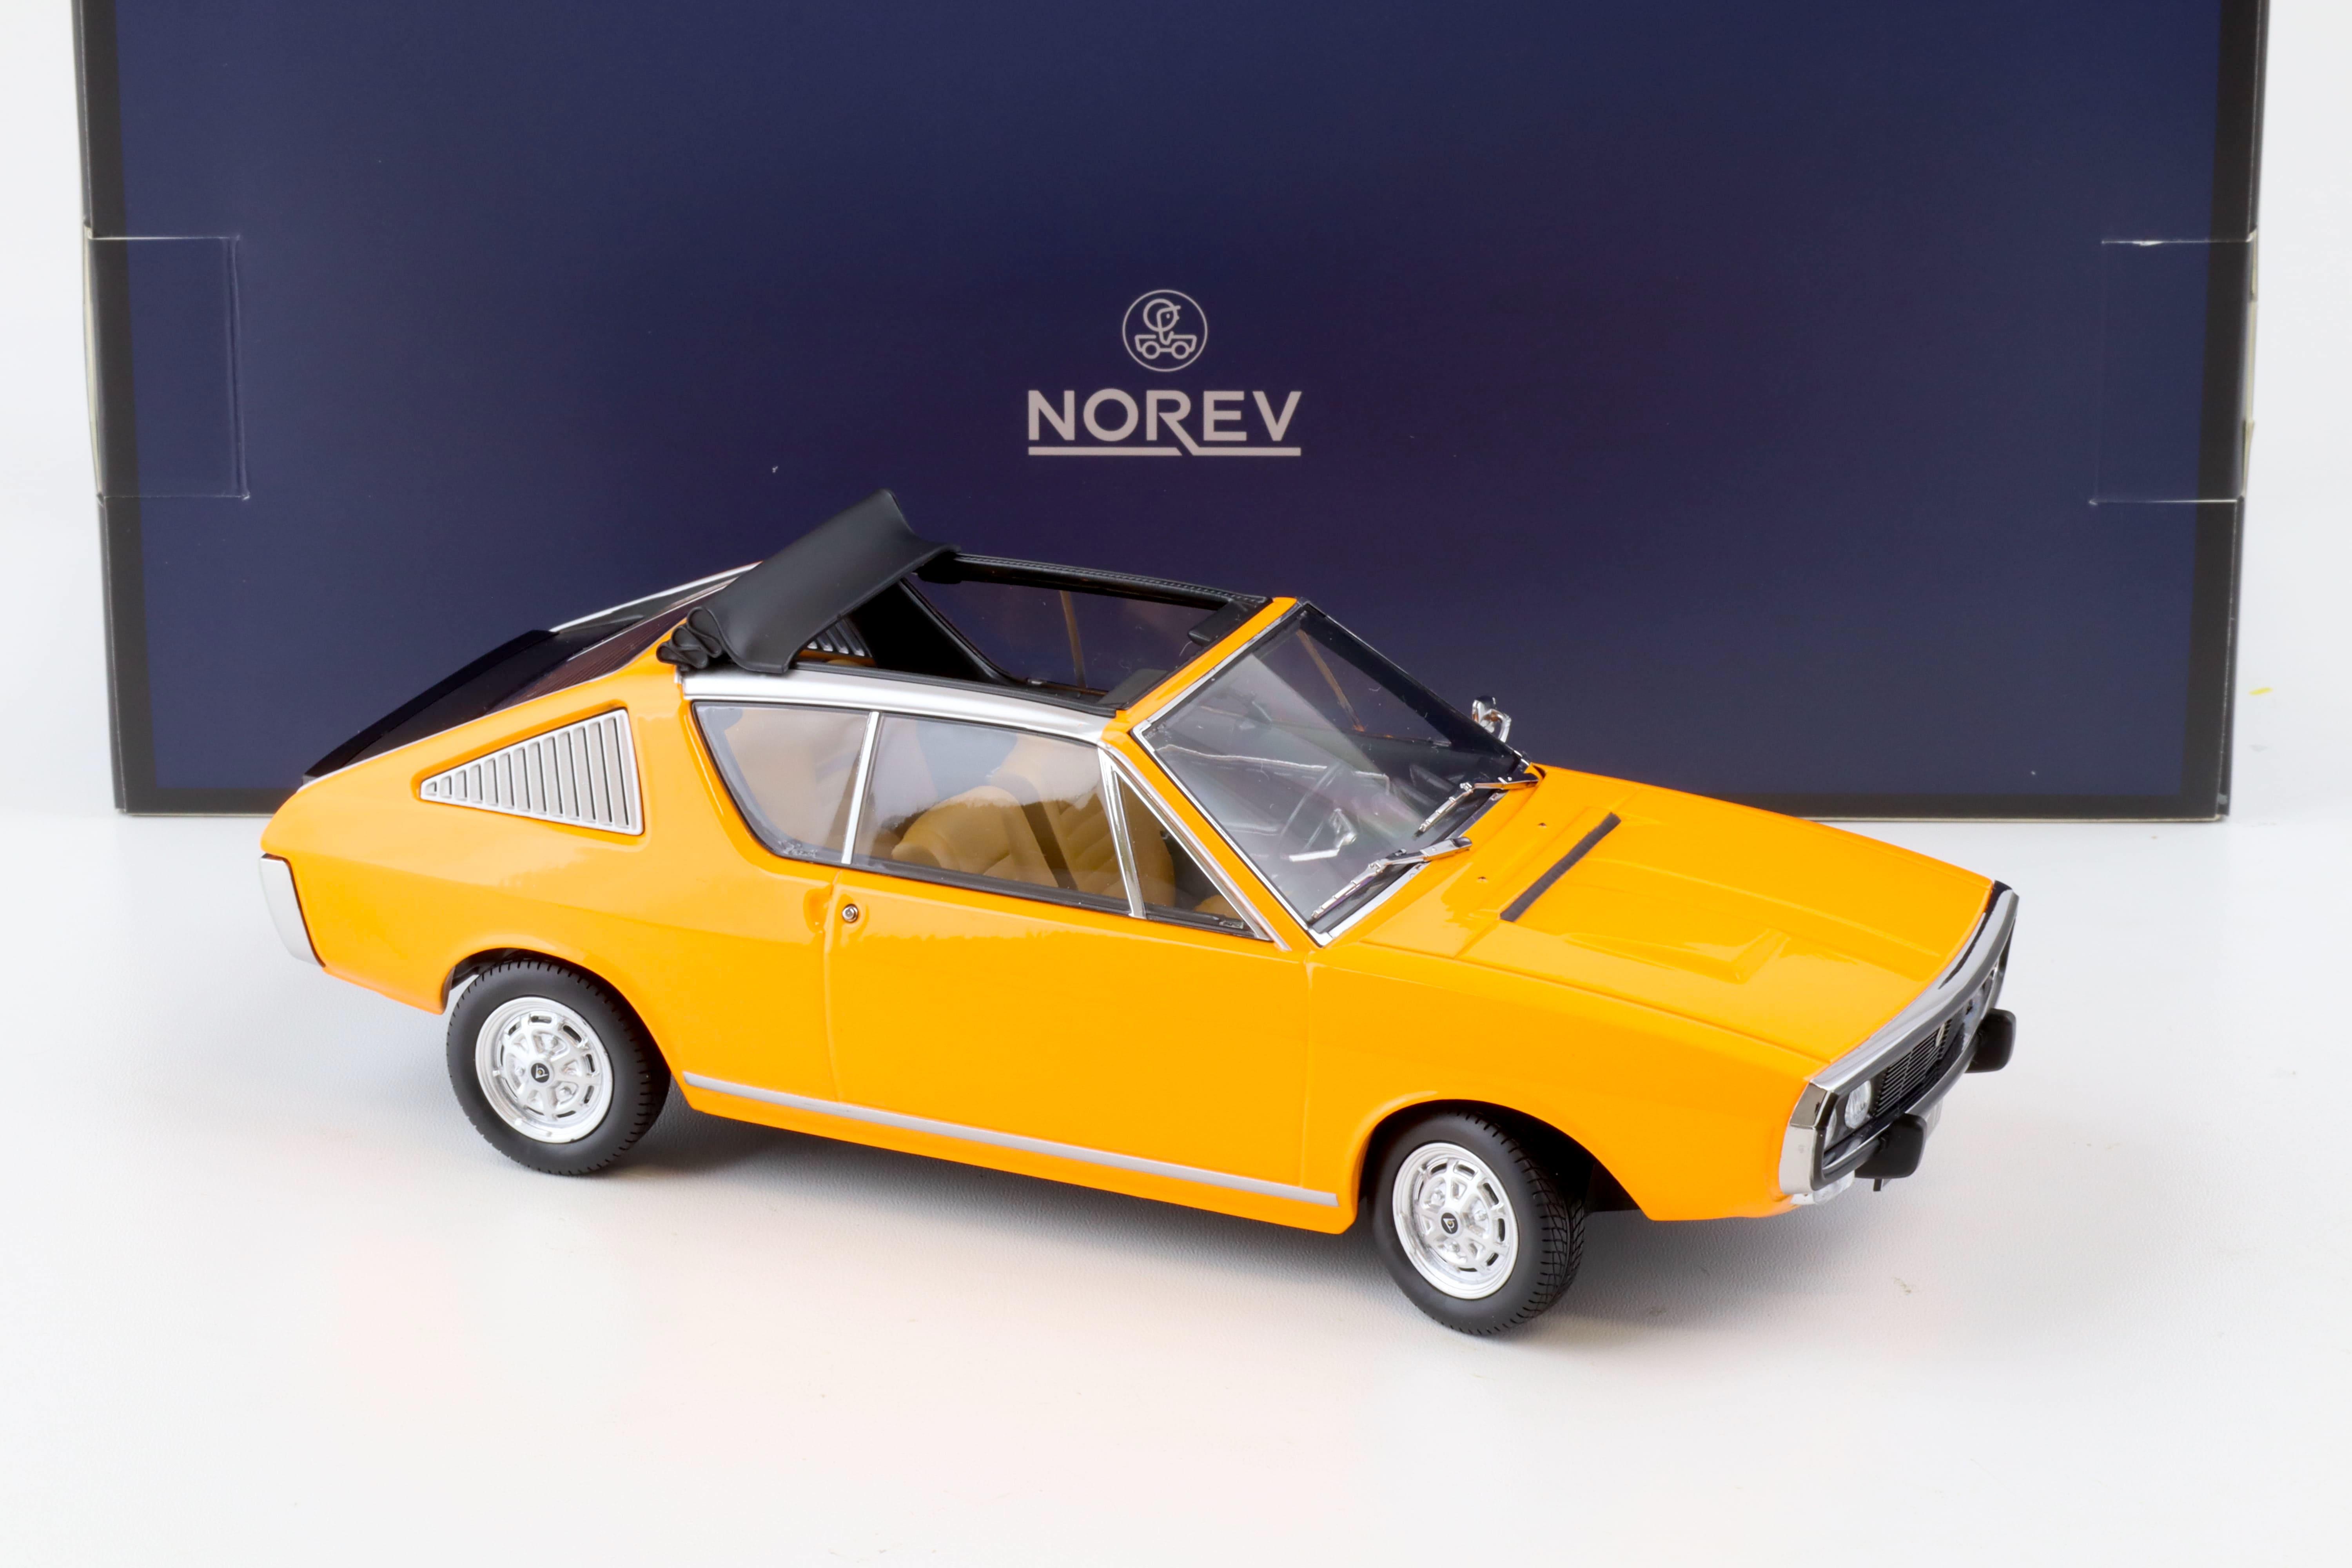 1:18 Norev Renault 17 TS Decrouvrable 1974 orange - Limited 300 pcs.